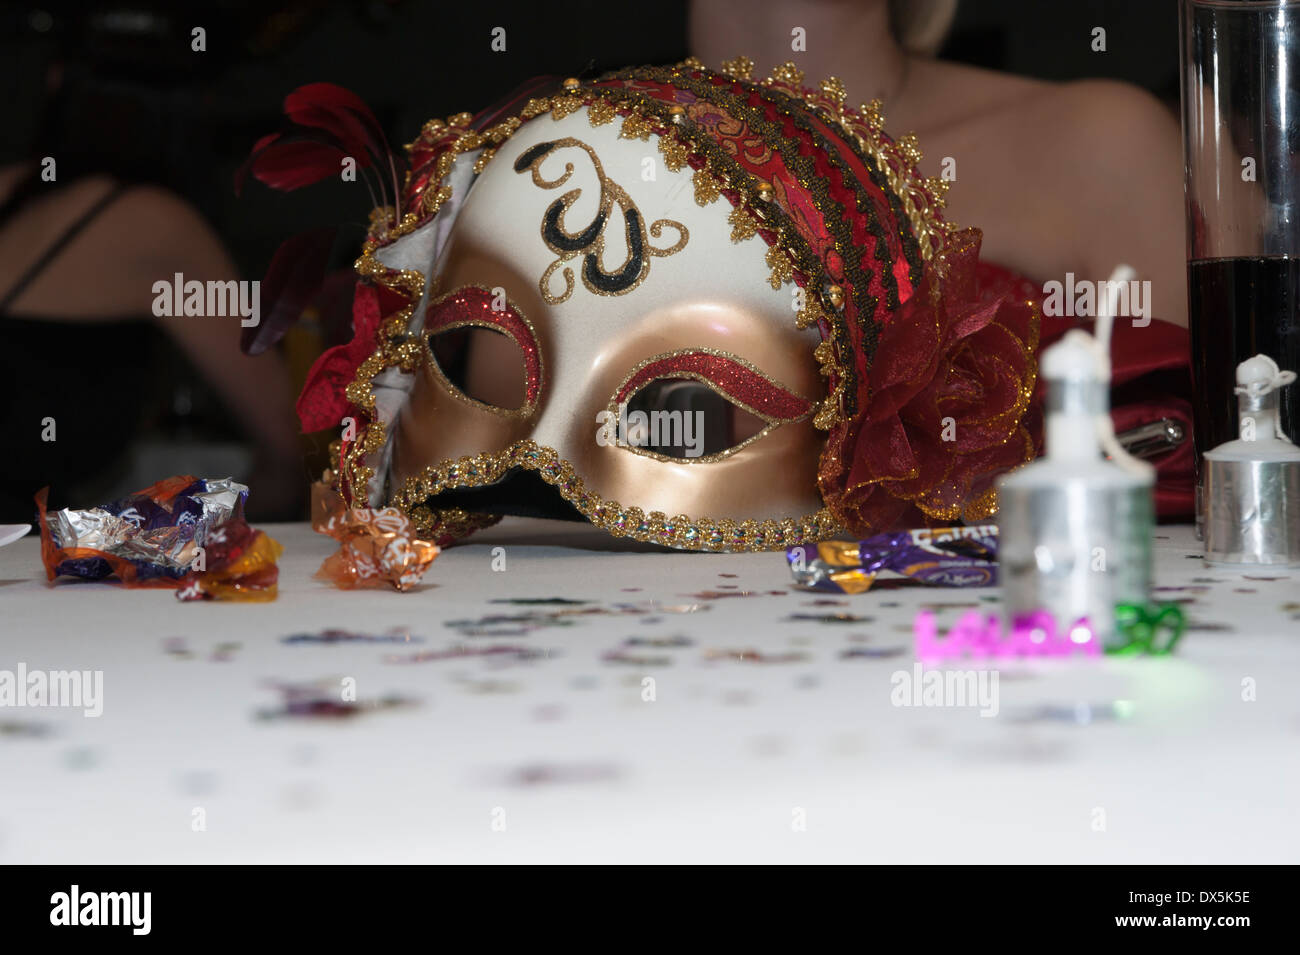 Eine ausrangierte Maske auf einer Party auf einem Tisch mit Konfetti und poppers Stockfoto